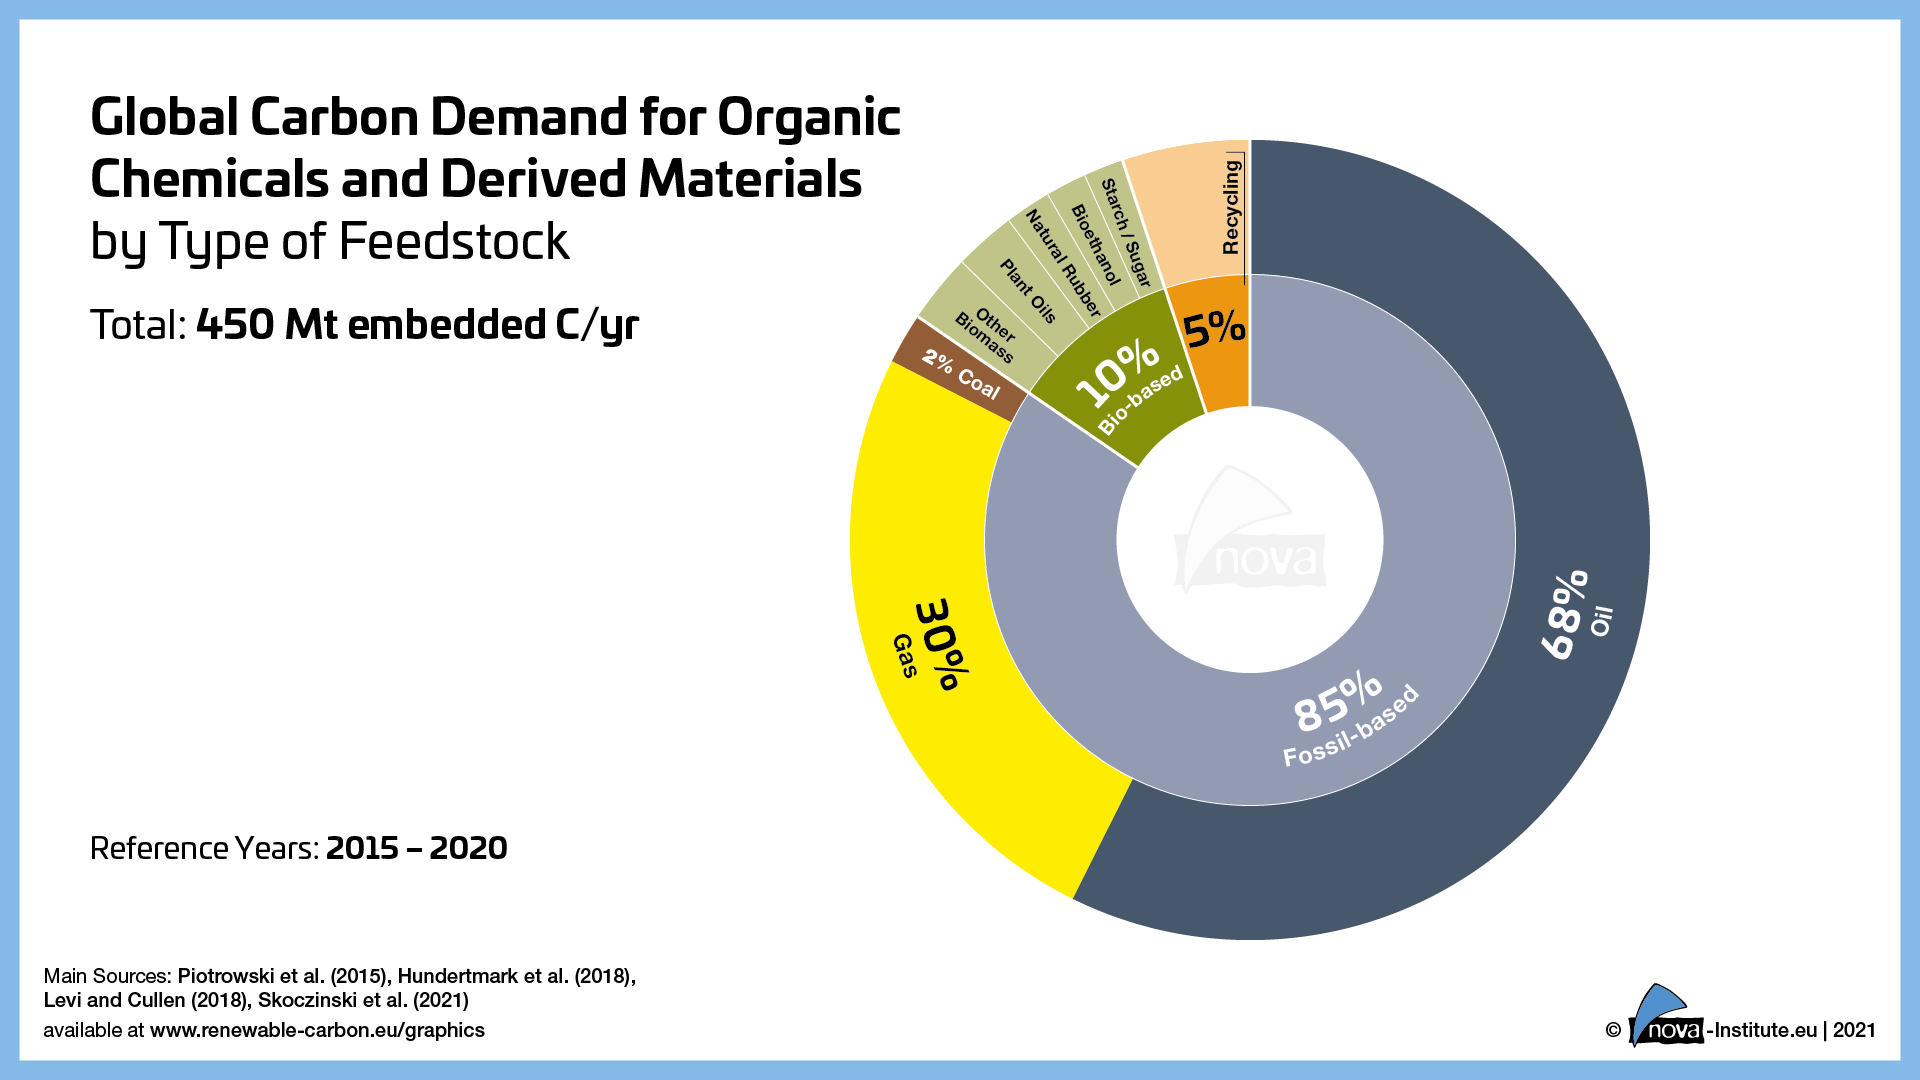 Grafik zur globalen Kohlenstoffnachfrage nach organischen Chemikalien und Derivaten